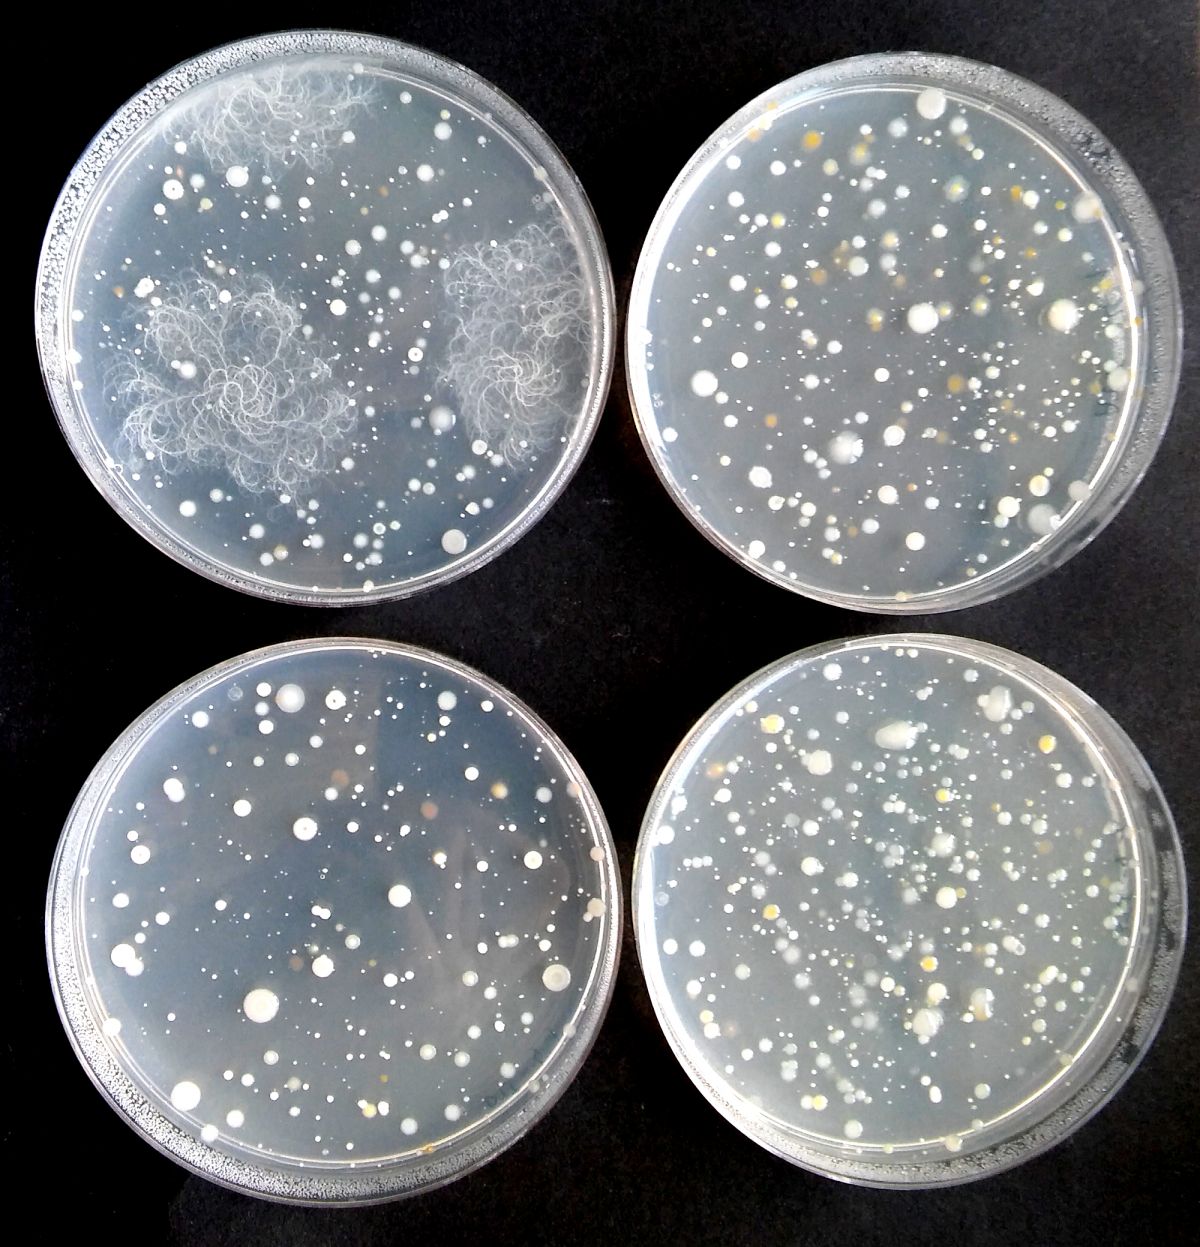 Wichtig sind sowohl bestimmte Mikroorganismen als auch die Diversität des Mikrobioms. Gezeigt sind hier Nährmedien, auf denen das Mikrobiom aus dem Boden rund um Gerstenwurzeln ausplattiert wurde.
